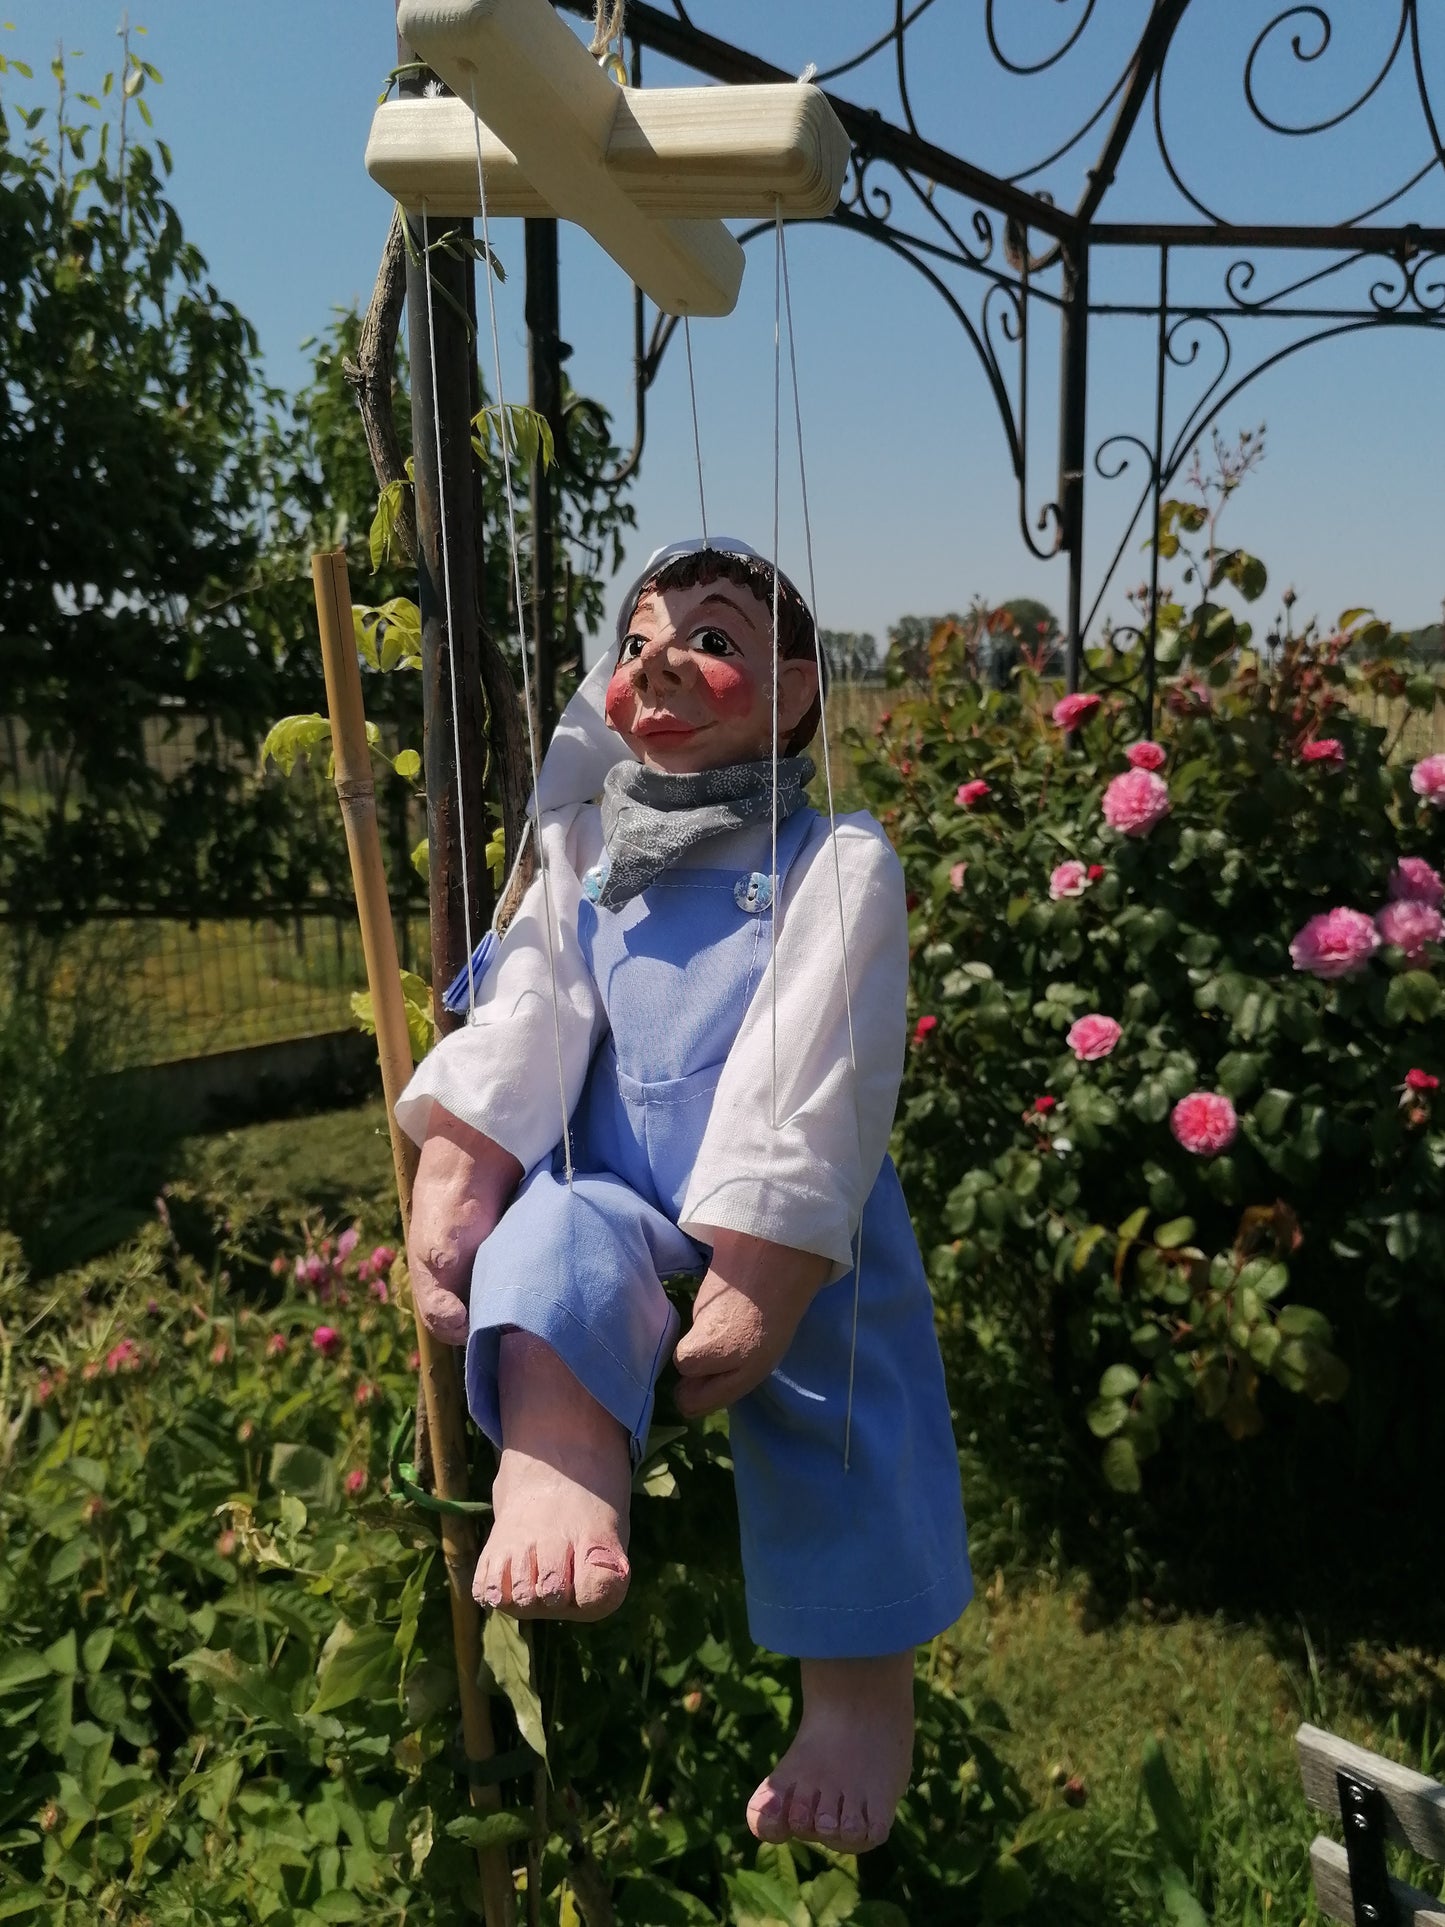 Marionnettes Le Menier by Sandrine De Zorzi